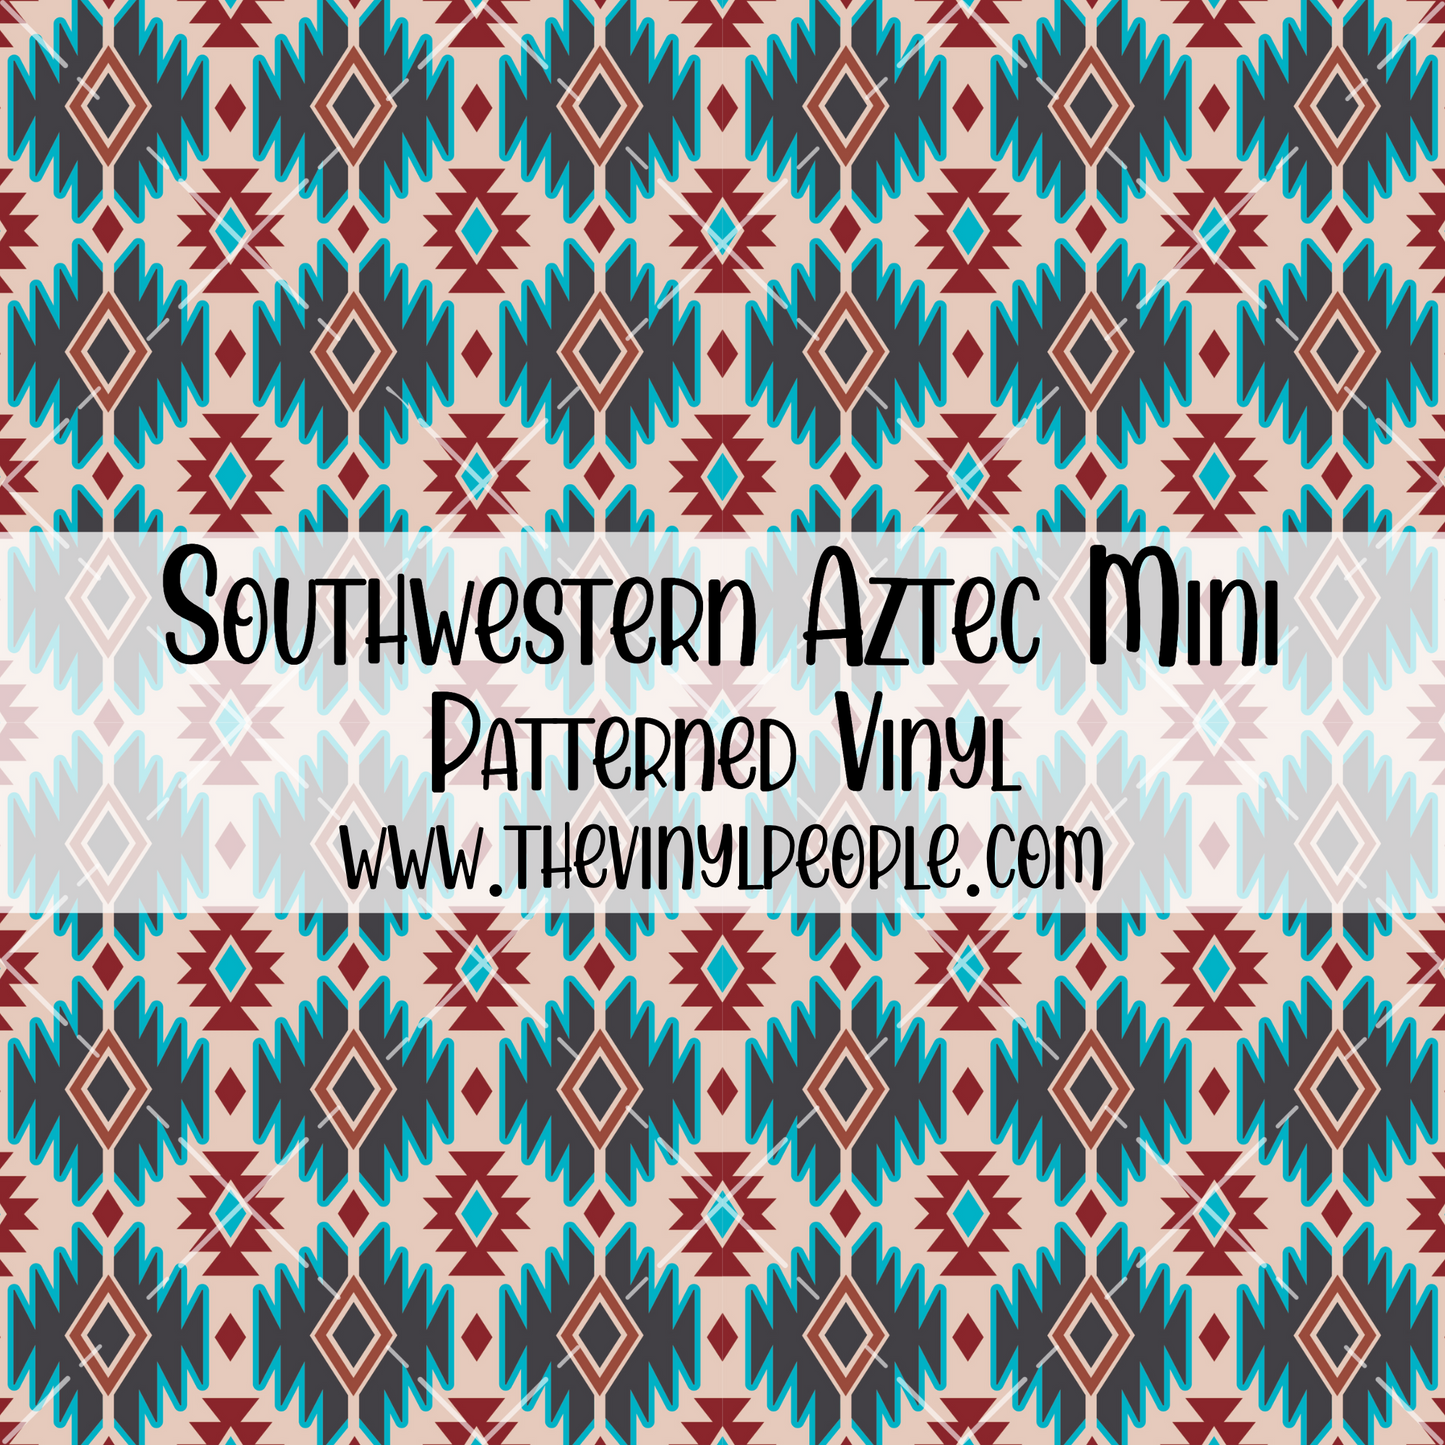 Southwestern Aztec Patterned Vinyl